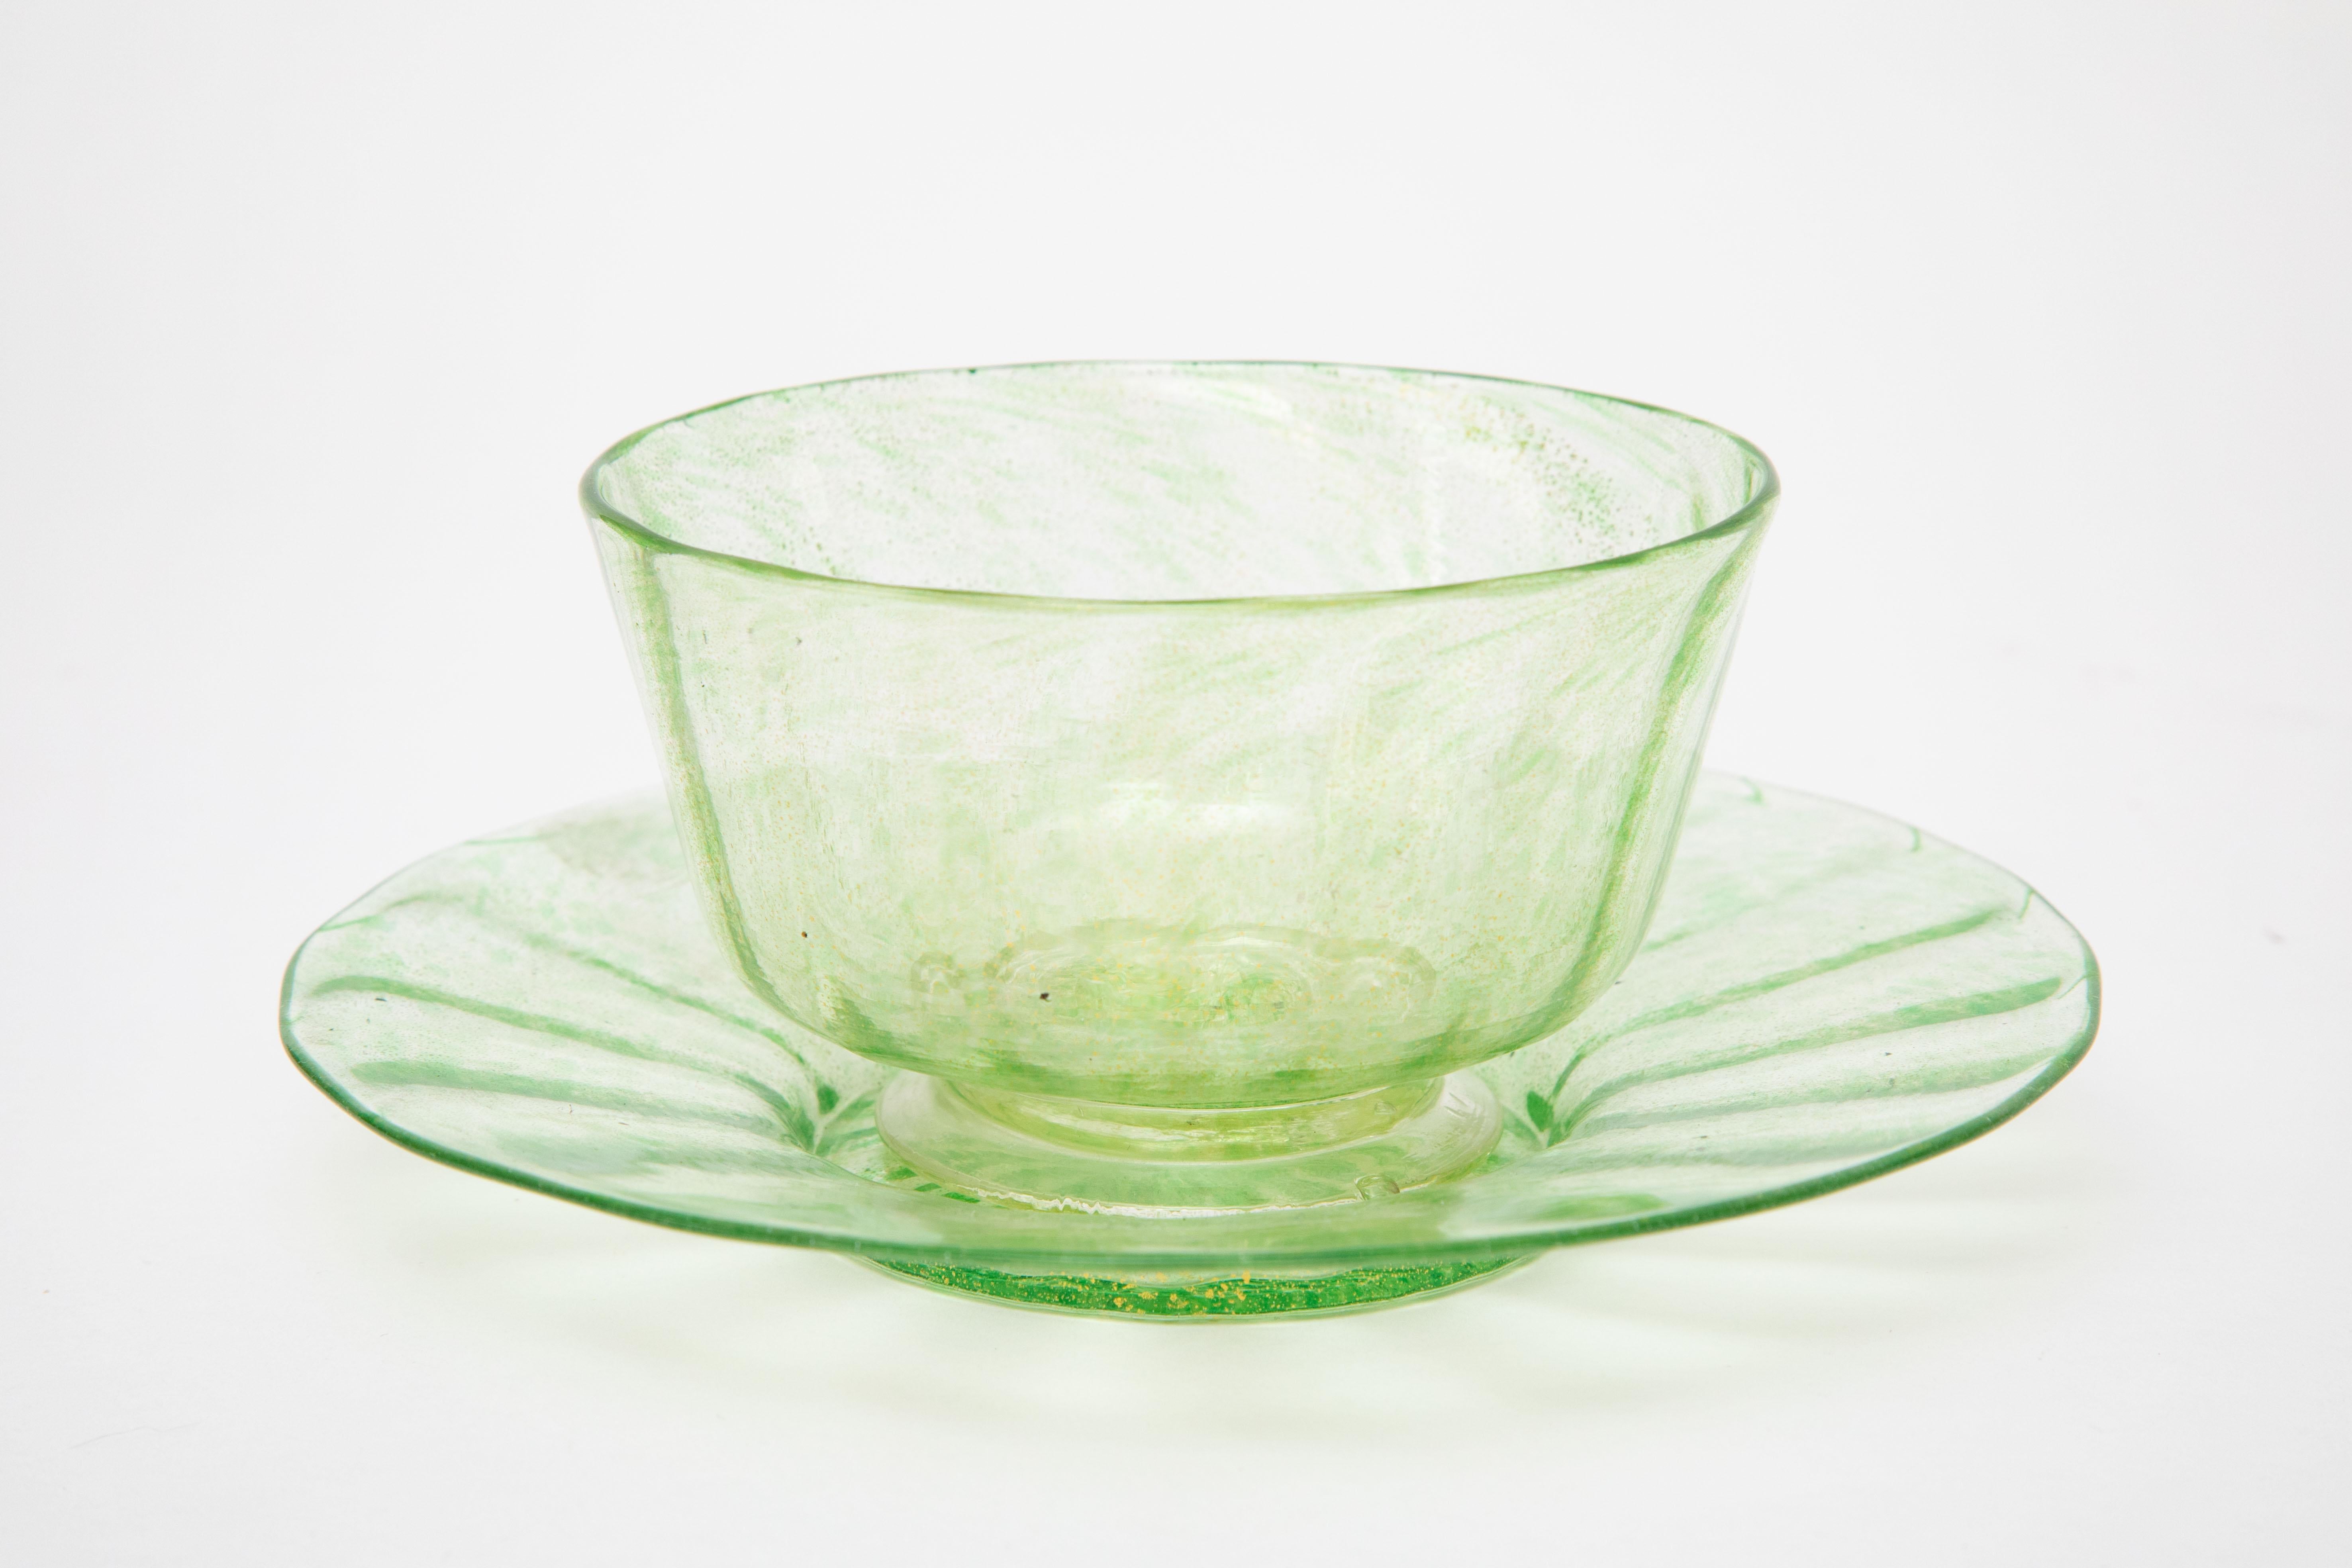 green glass dessert plates